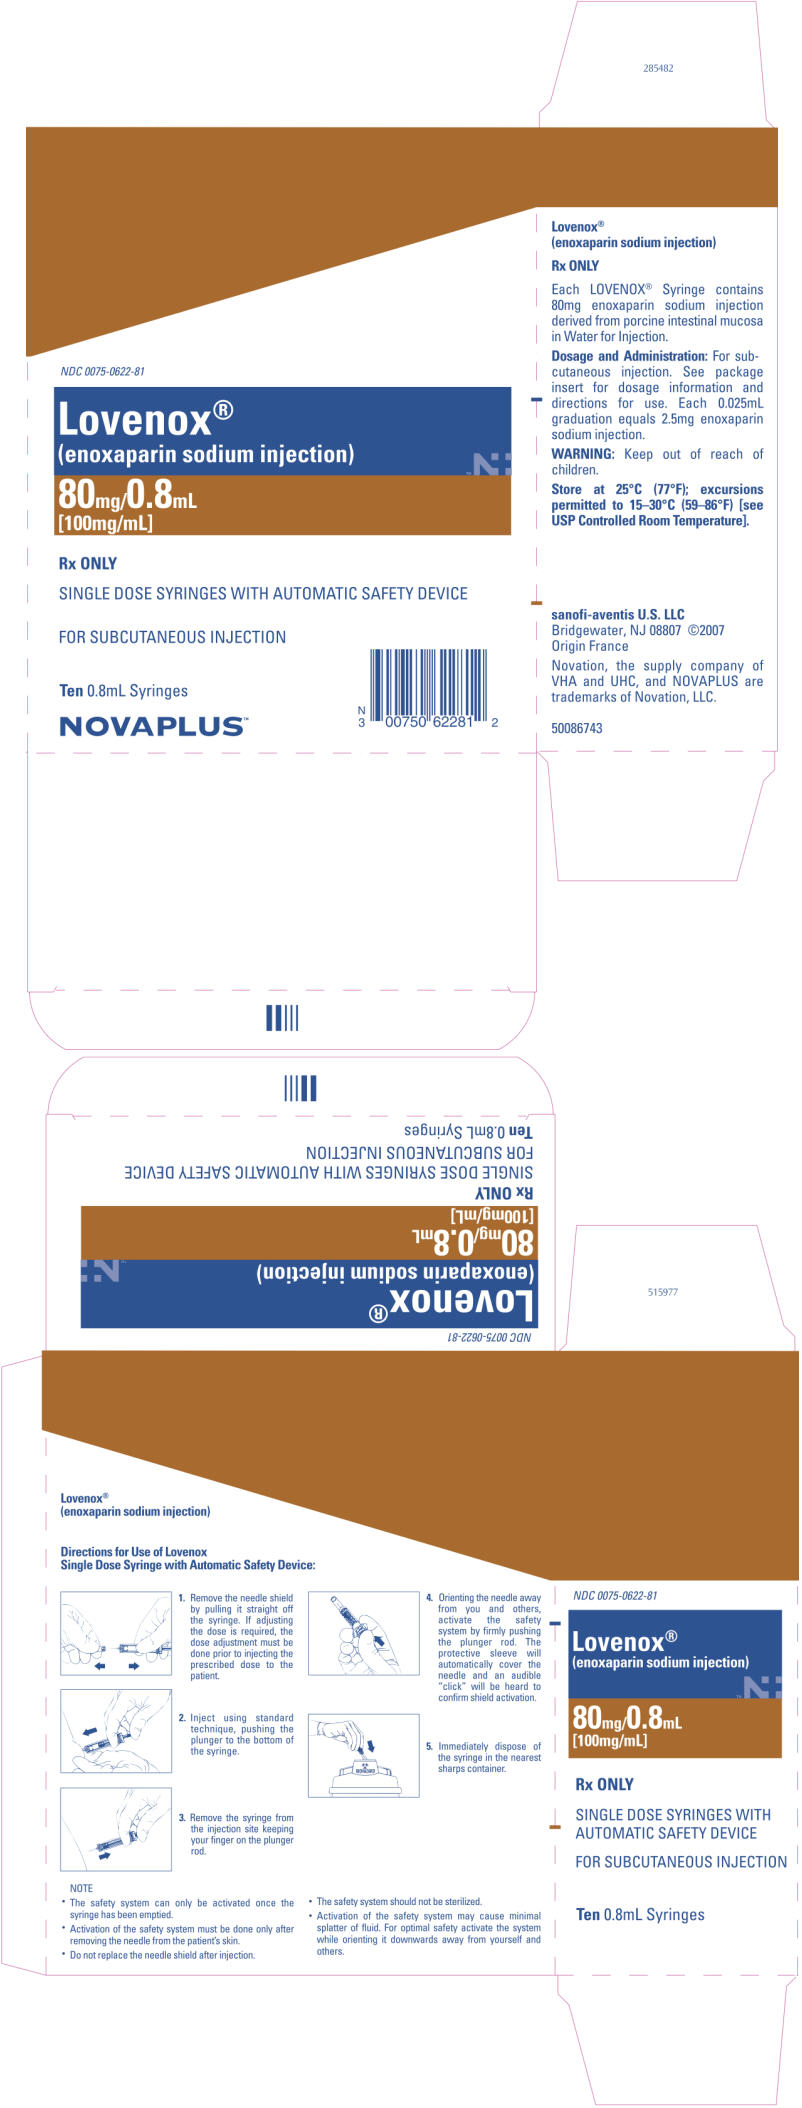 PRINCIPAL DISPLAY PANEL - 80mg/0.8mL Carton